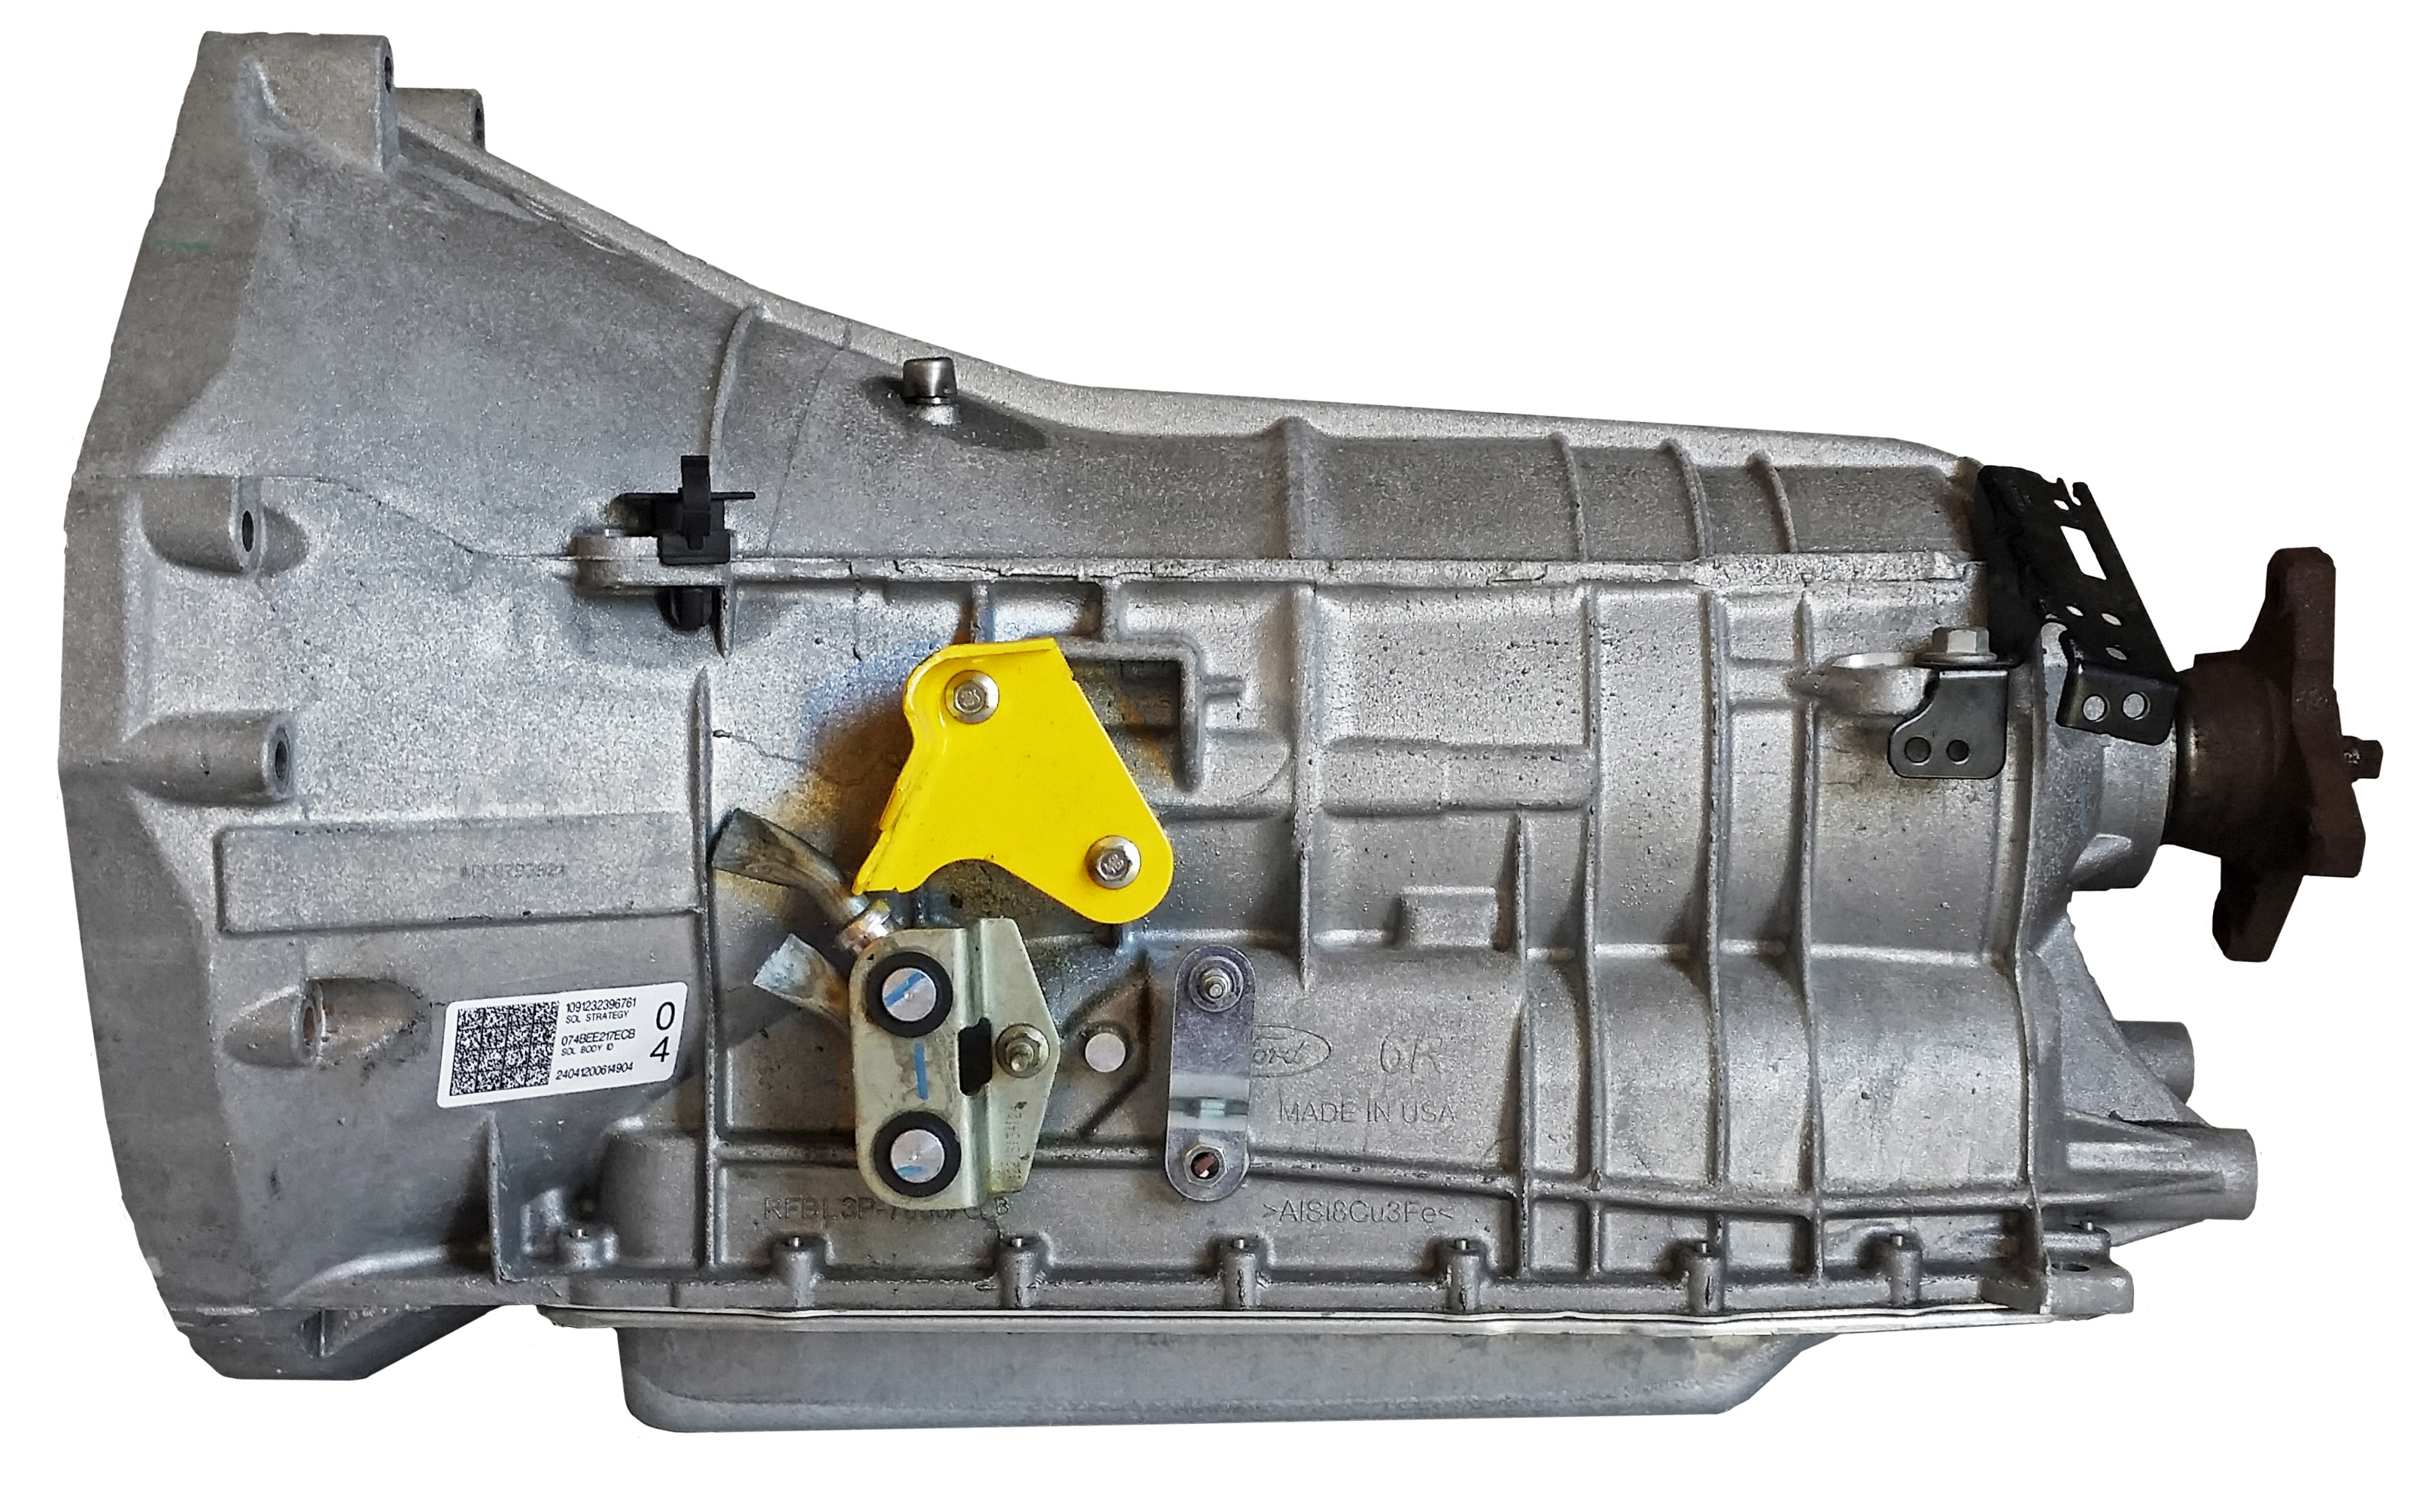 2013 Ford F150 6R80 Transmission Problems  